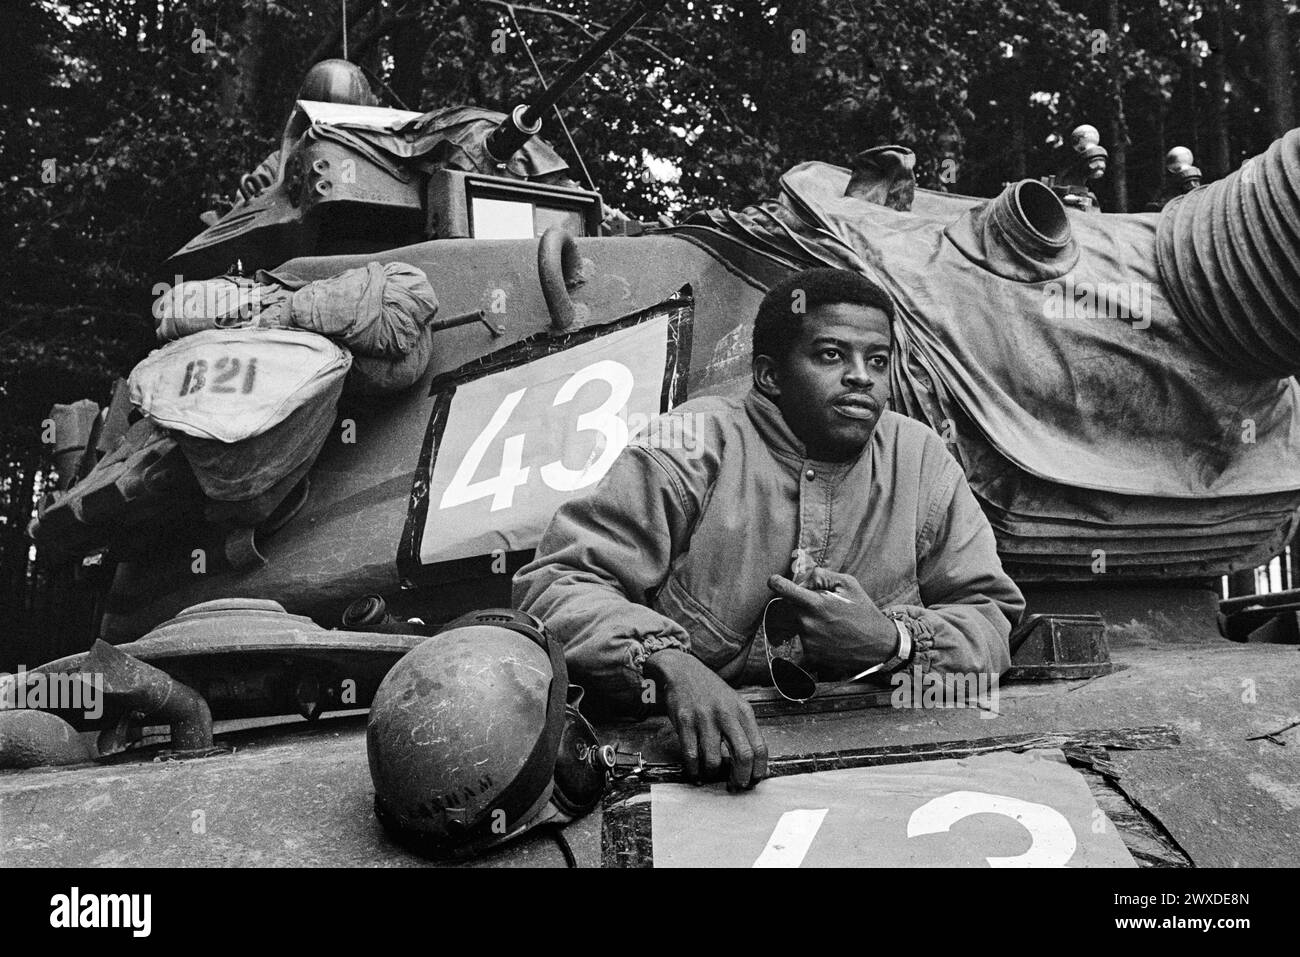 - NATO exercises in Germany, driver of a US Army M 60 tank (October 1983)   - esercitazioni NATO in Germania, conduttore di un carro armato M 60 dell'US Army (ottobre 1983) Stock Photo